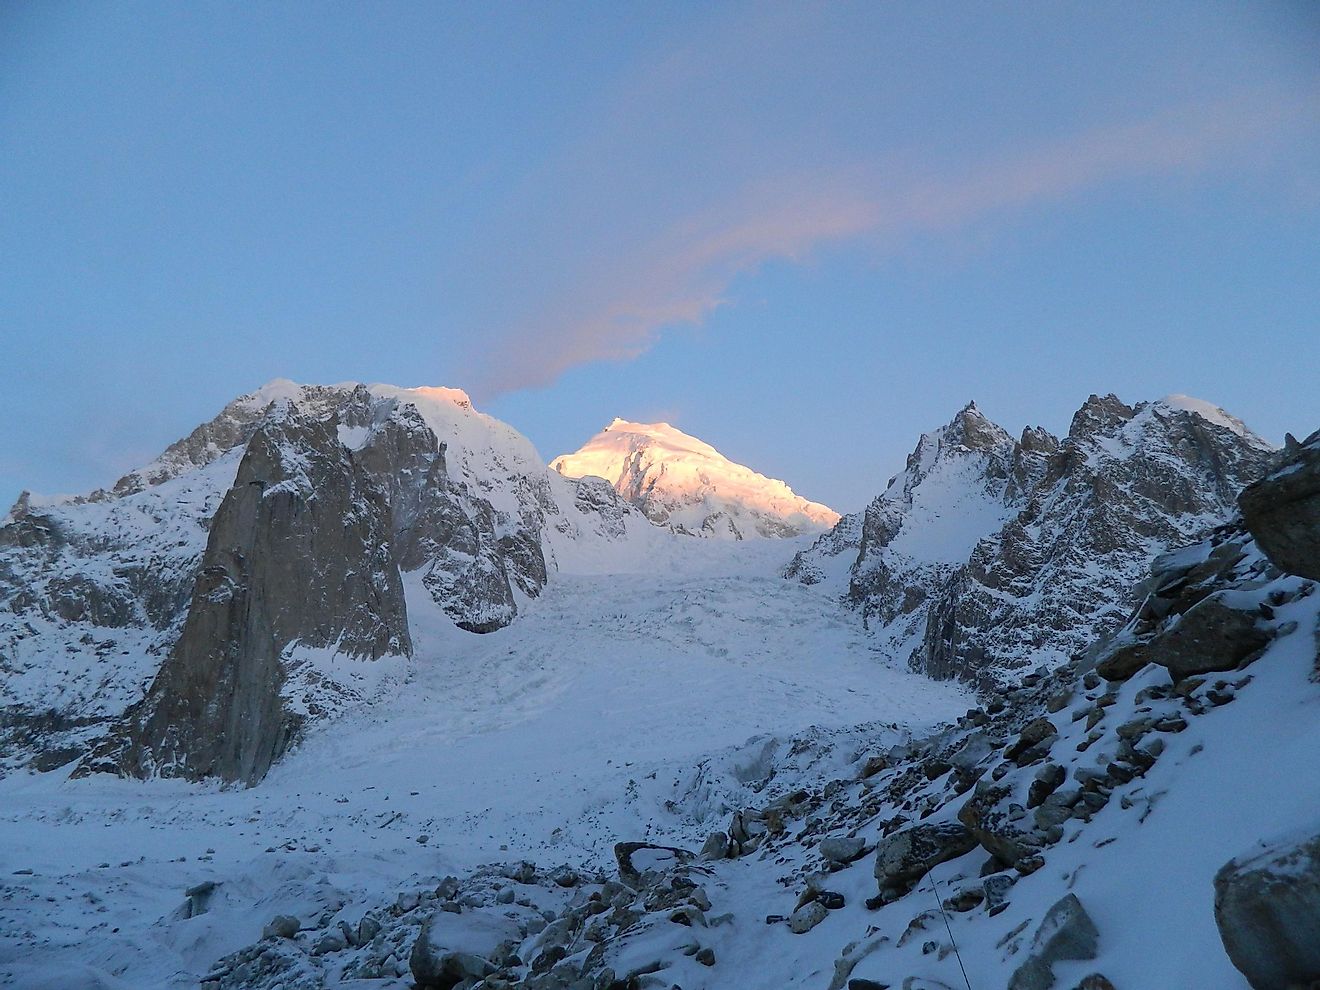 Sunset At The Siachen Glacier, The Second Longest Non-Polar Glacier In The World.